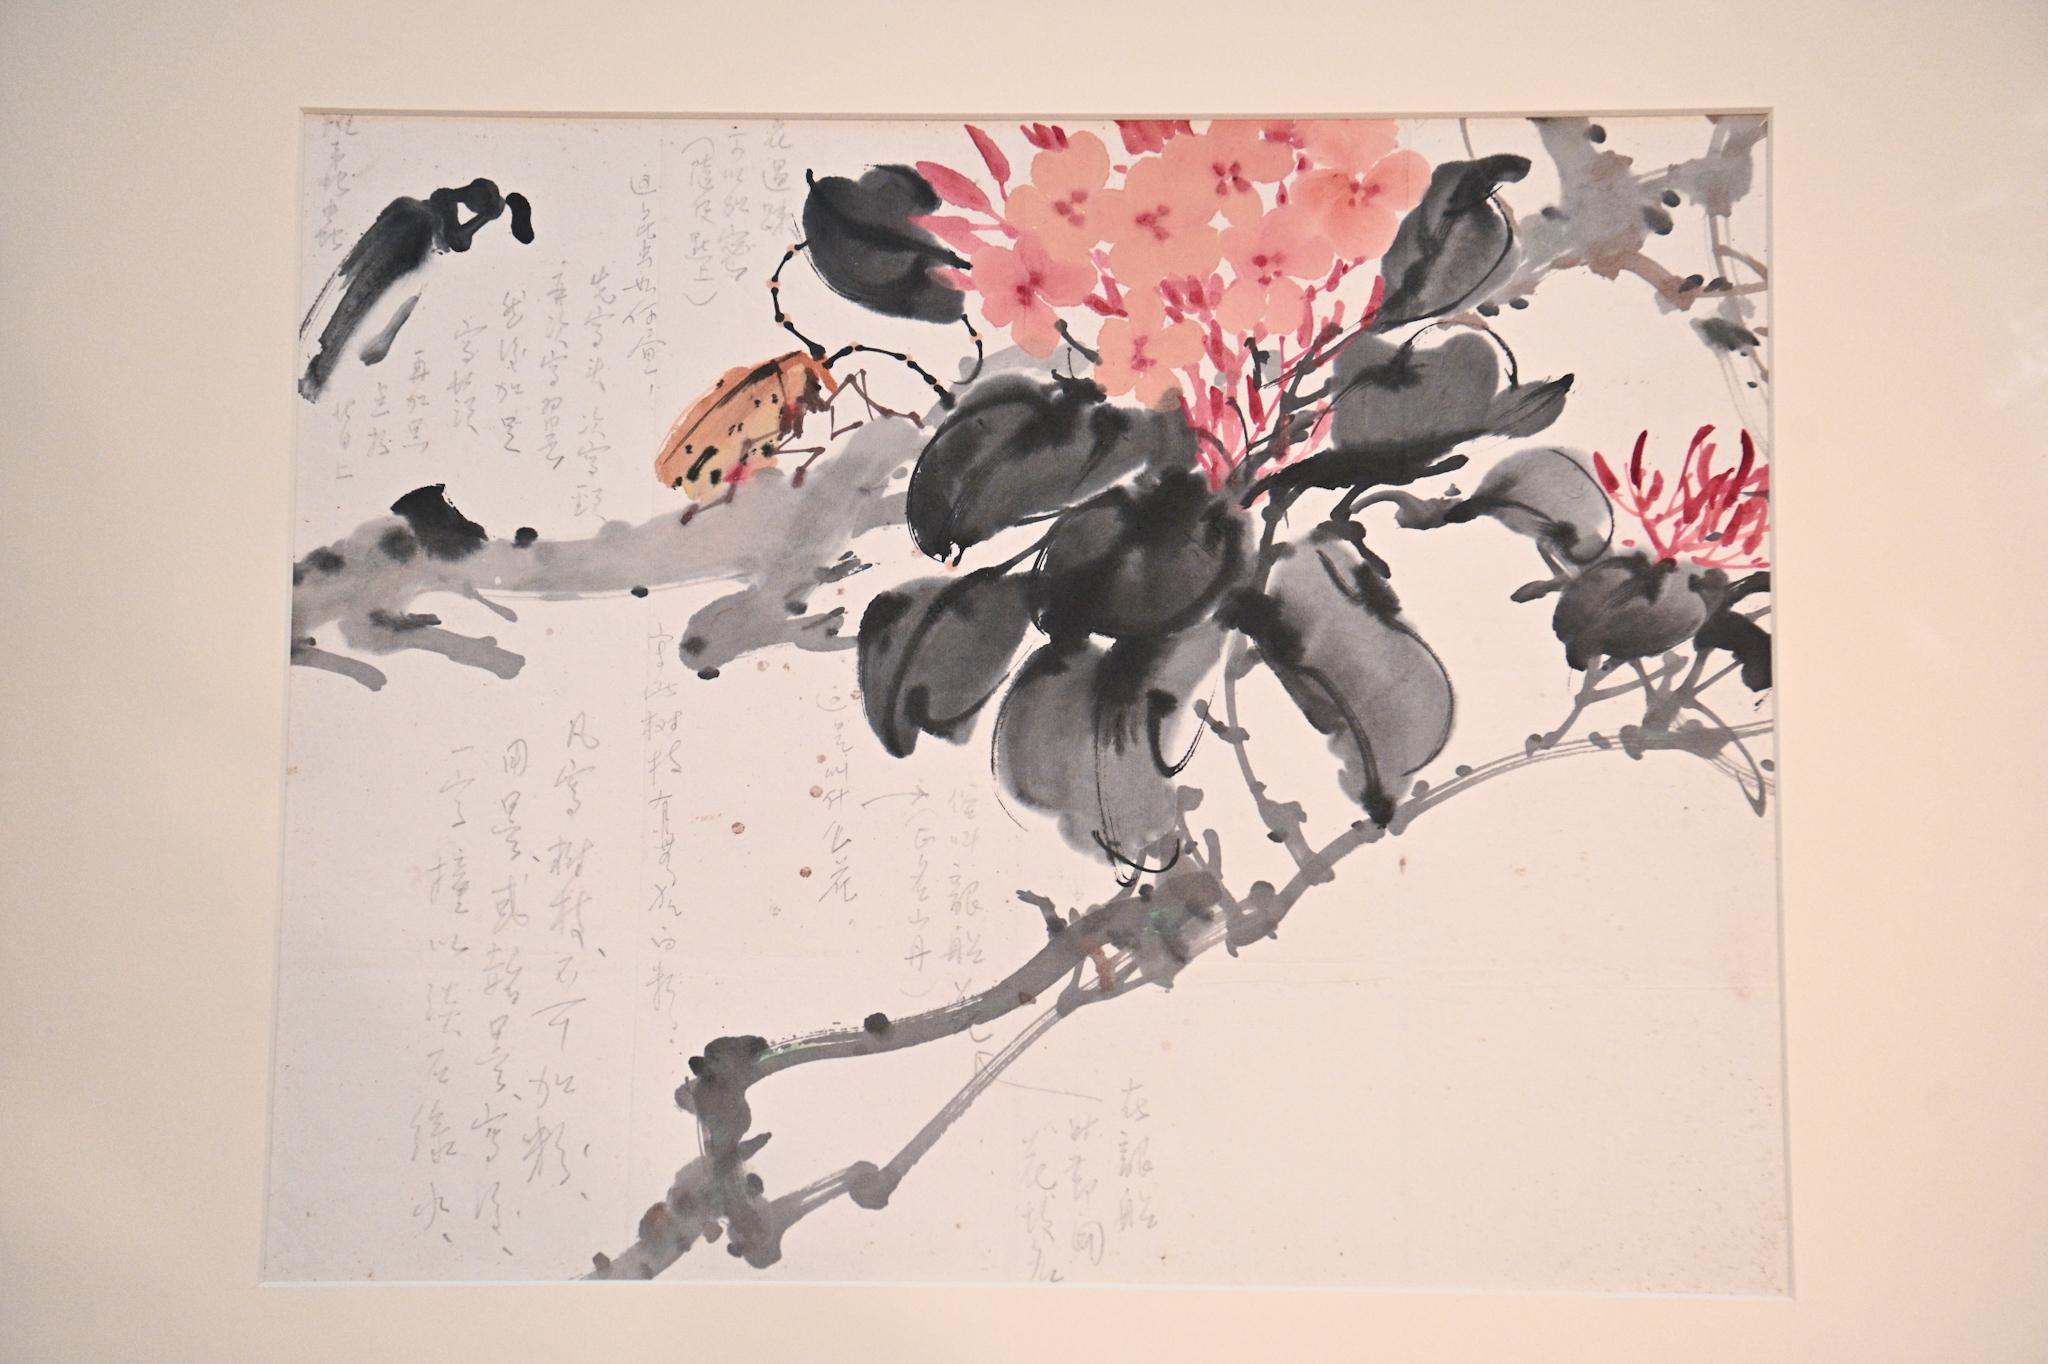 香港文化博物馆明日（九月二十一日）起举行「千里觅艺—赵少昂与陈崎师生对话」展览。图示陈崎的画课习作作品《龙船花》，作品上记录他与老师赵少昂之间的问答。